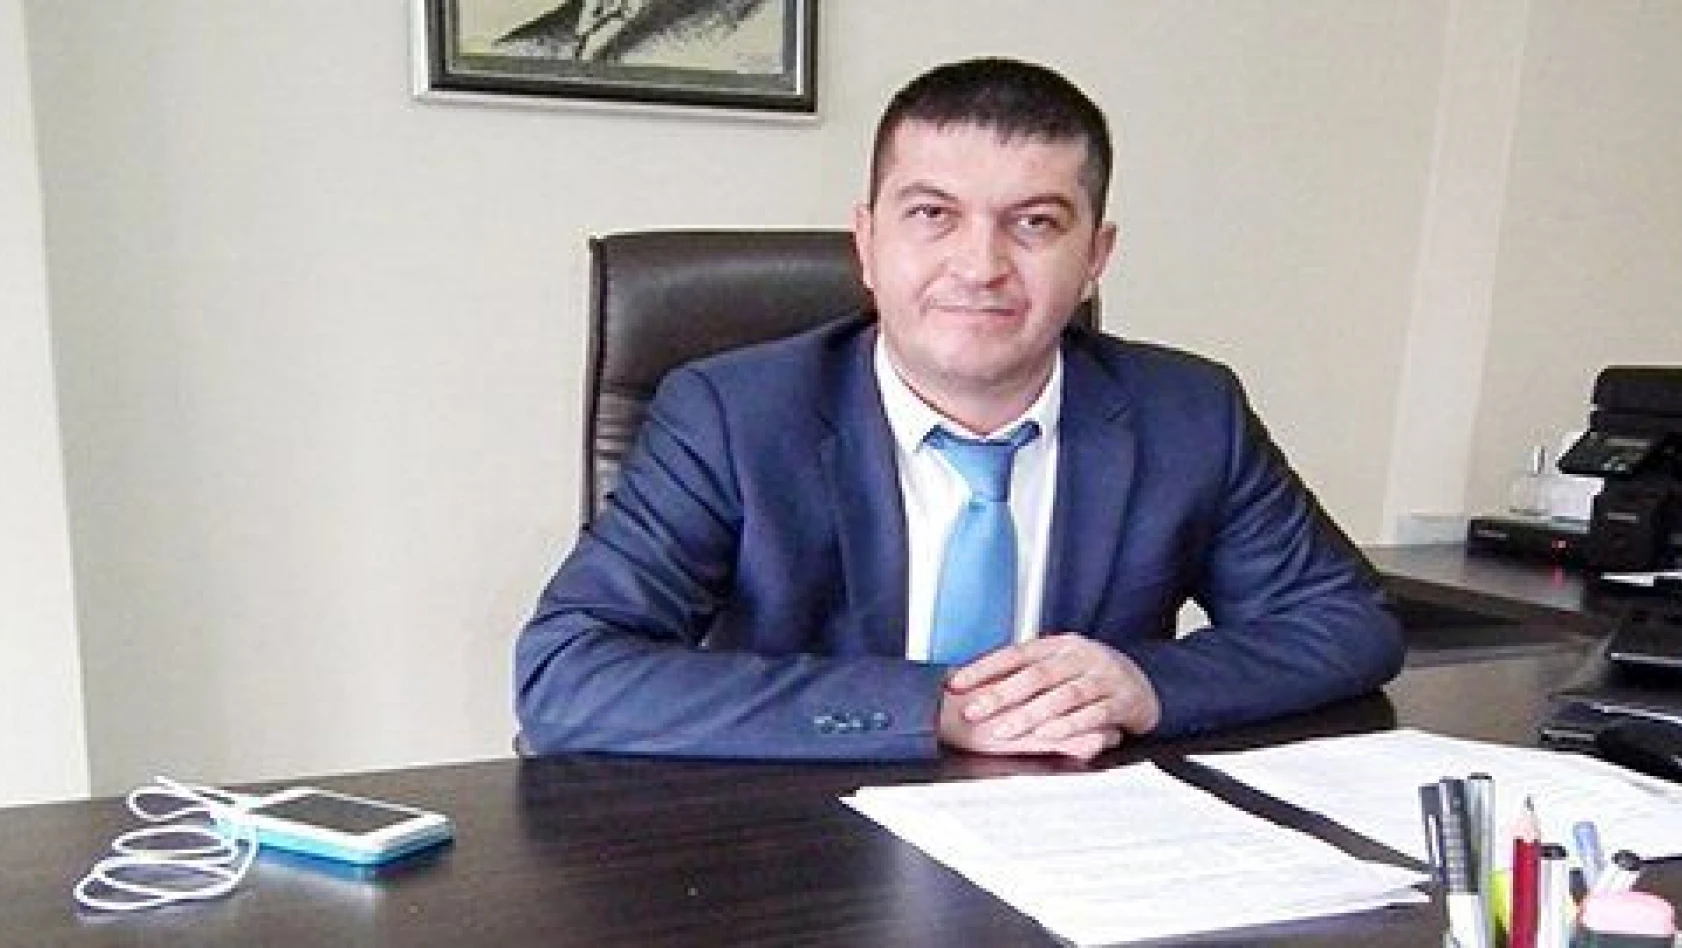 Kayseri Erciyesspor Kulübü'nden, eski başkana suç duyurusu 